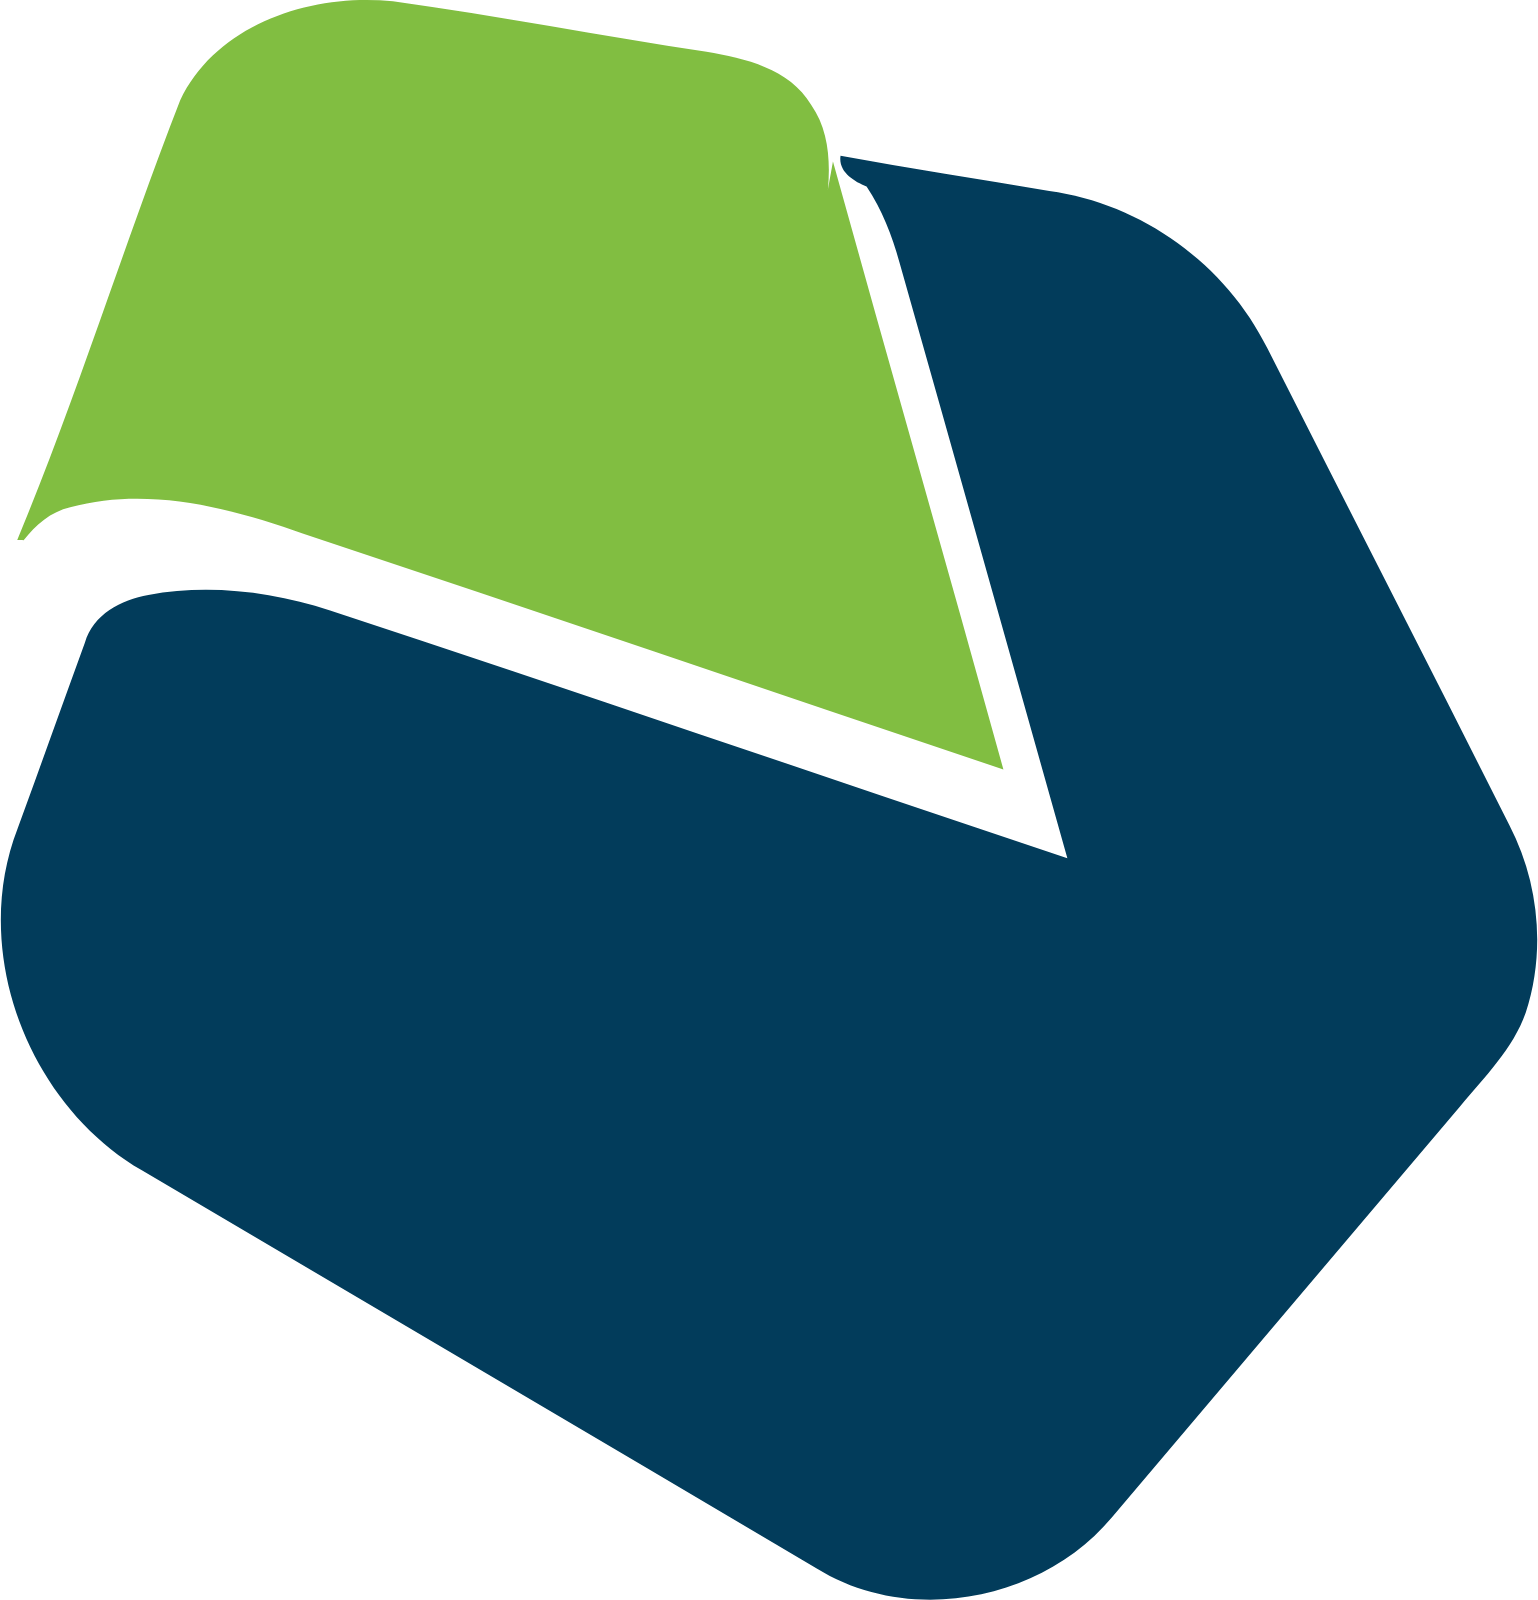 Vanda Pharmaceuticals logo (PNG transparent)